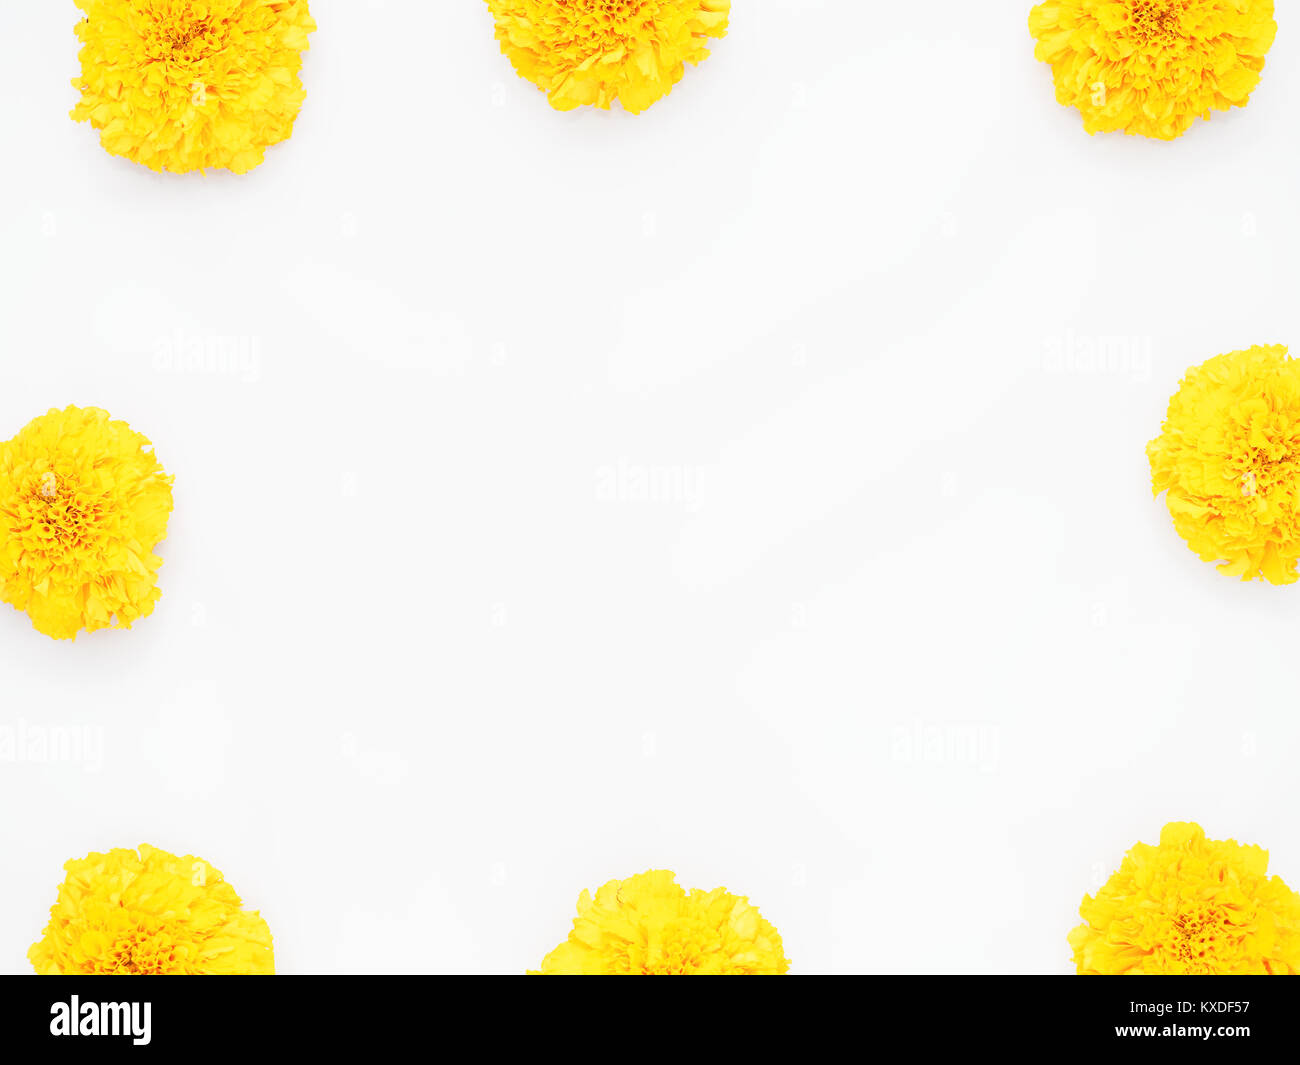 Amarillo flor caléndula aislado sobre fondo blanco utilice para adorar la  sabiduría de Dios en la cultura hindú por hindúes o se puede utilizar como  producto de salud Fotografía de stock -